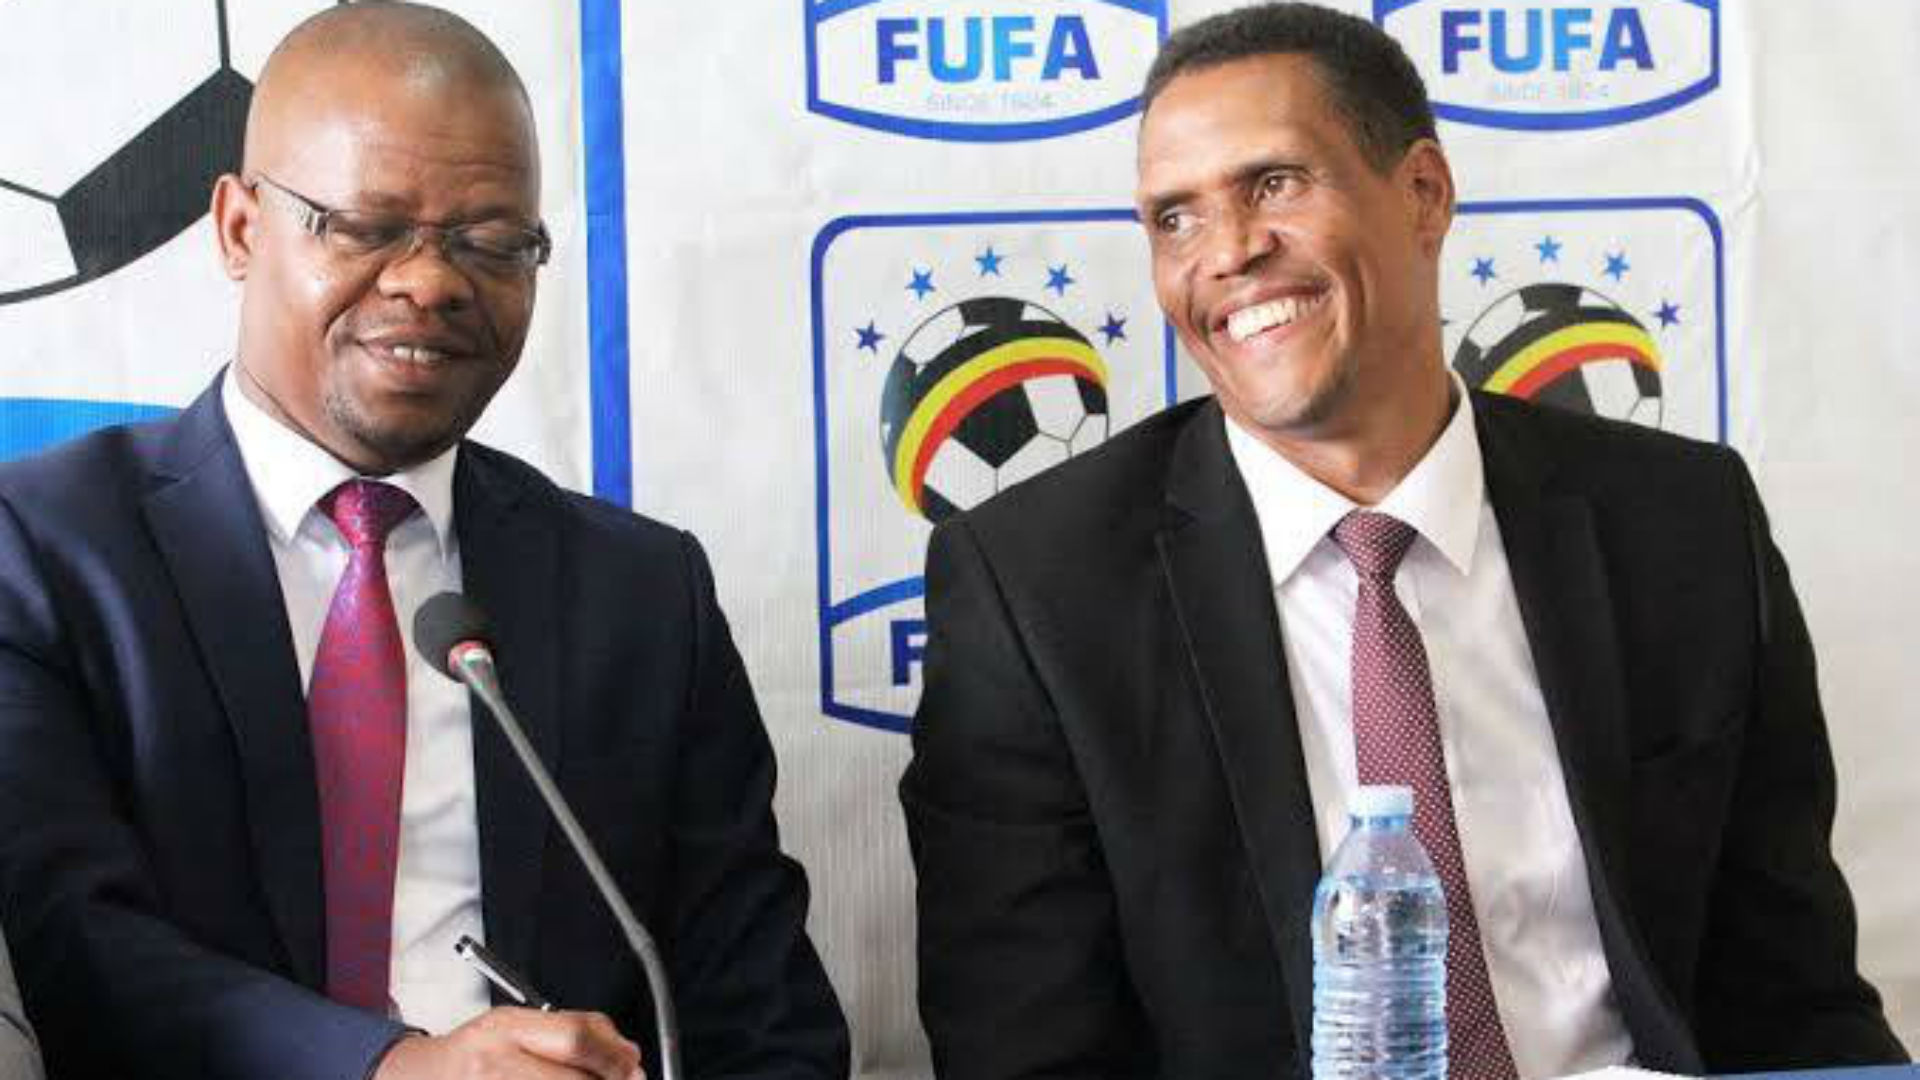 Fifa's Football Executive Programme will help bolster football growth - Fufa chief Edgar Watson